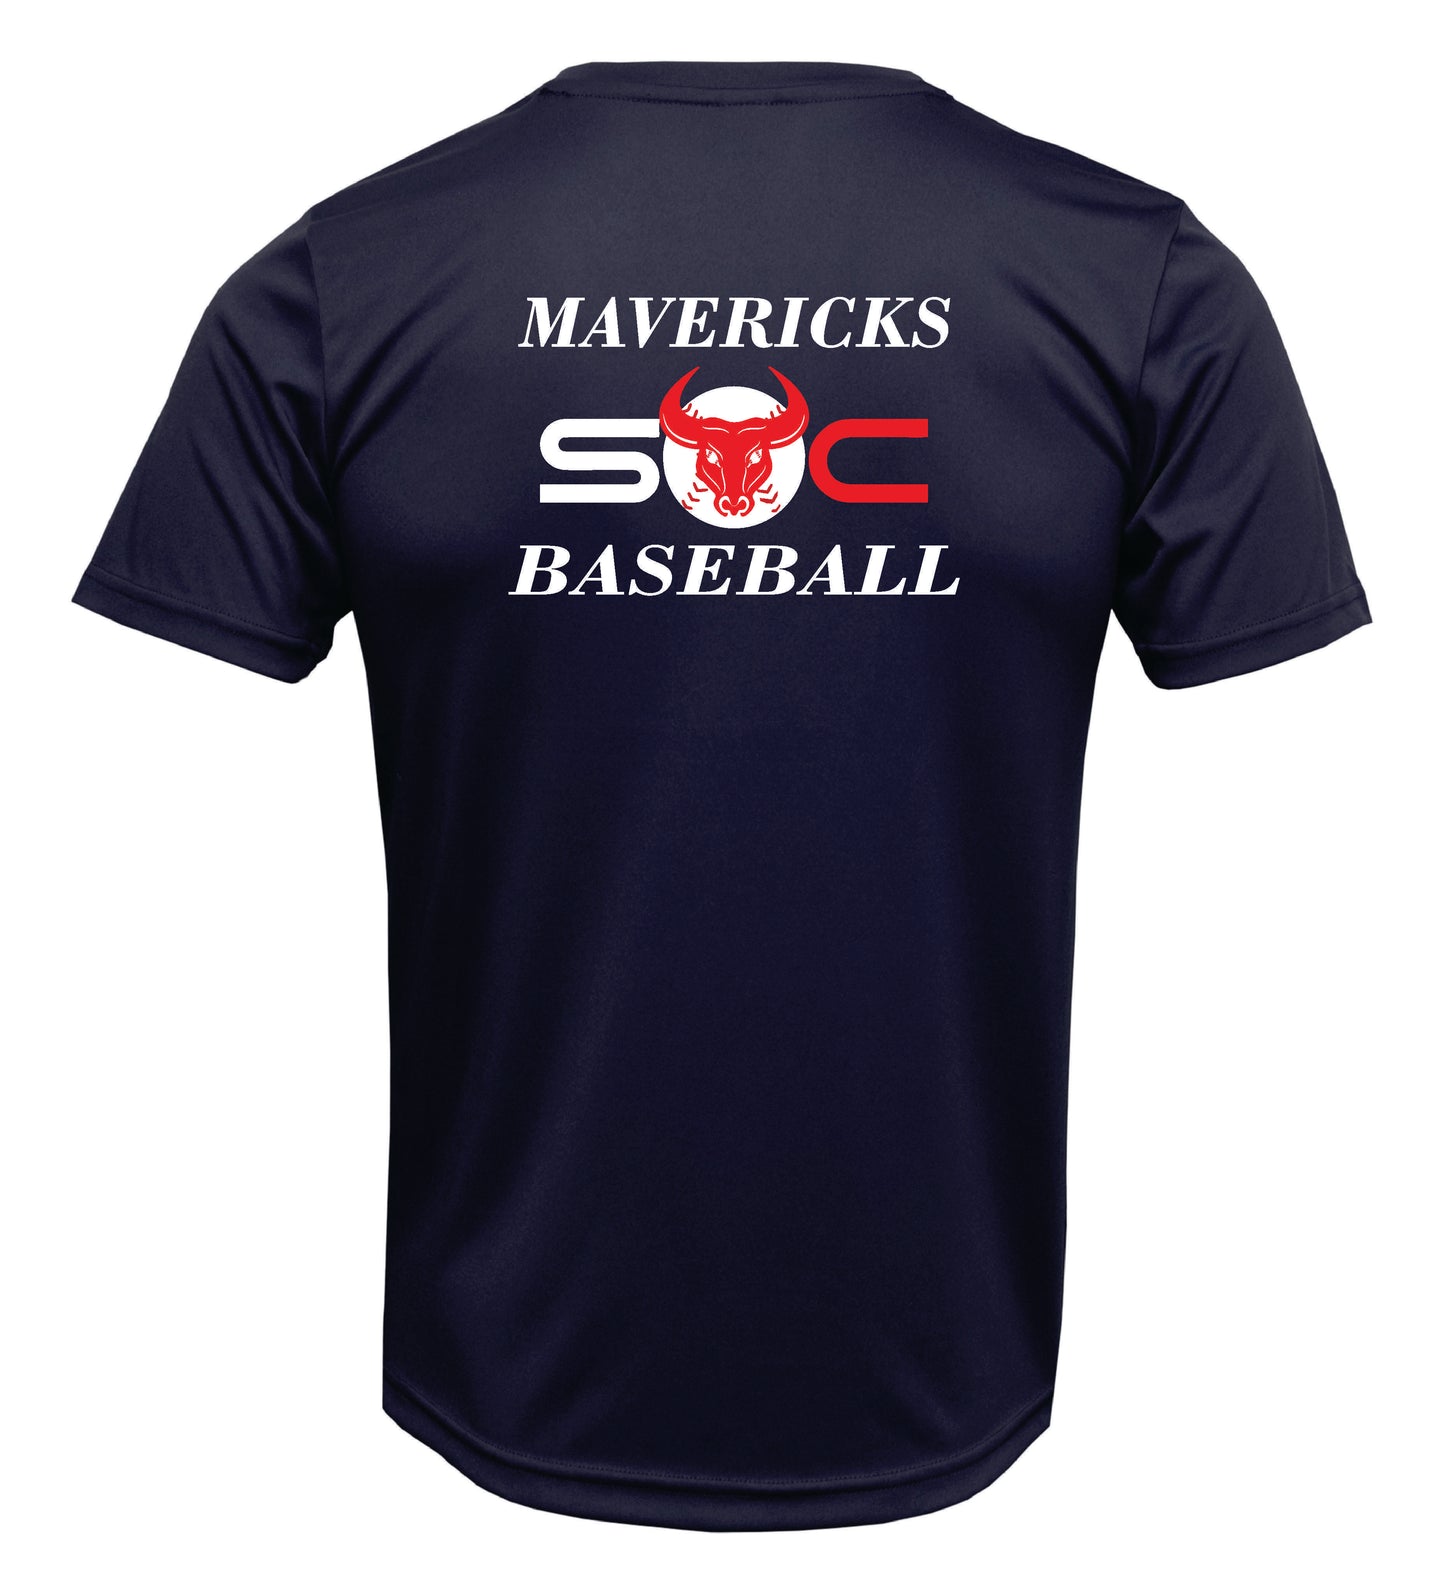 SC "Maverick Logo" Dri-fit T-shirt